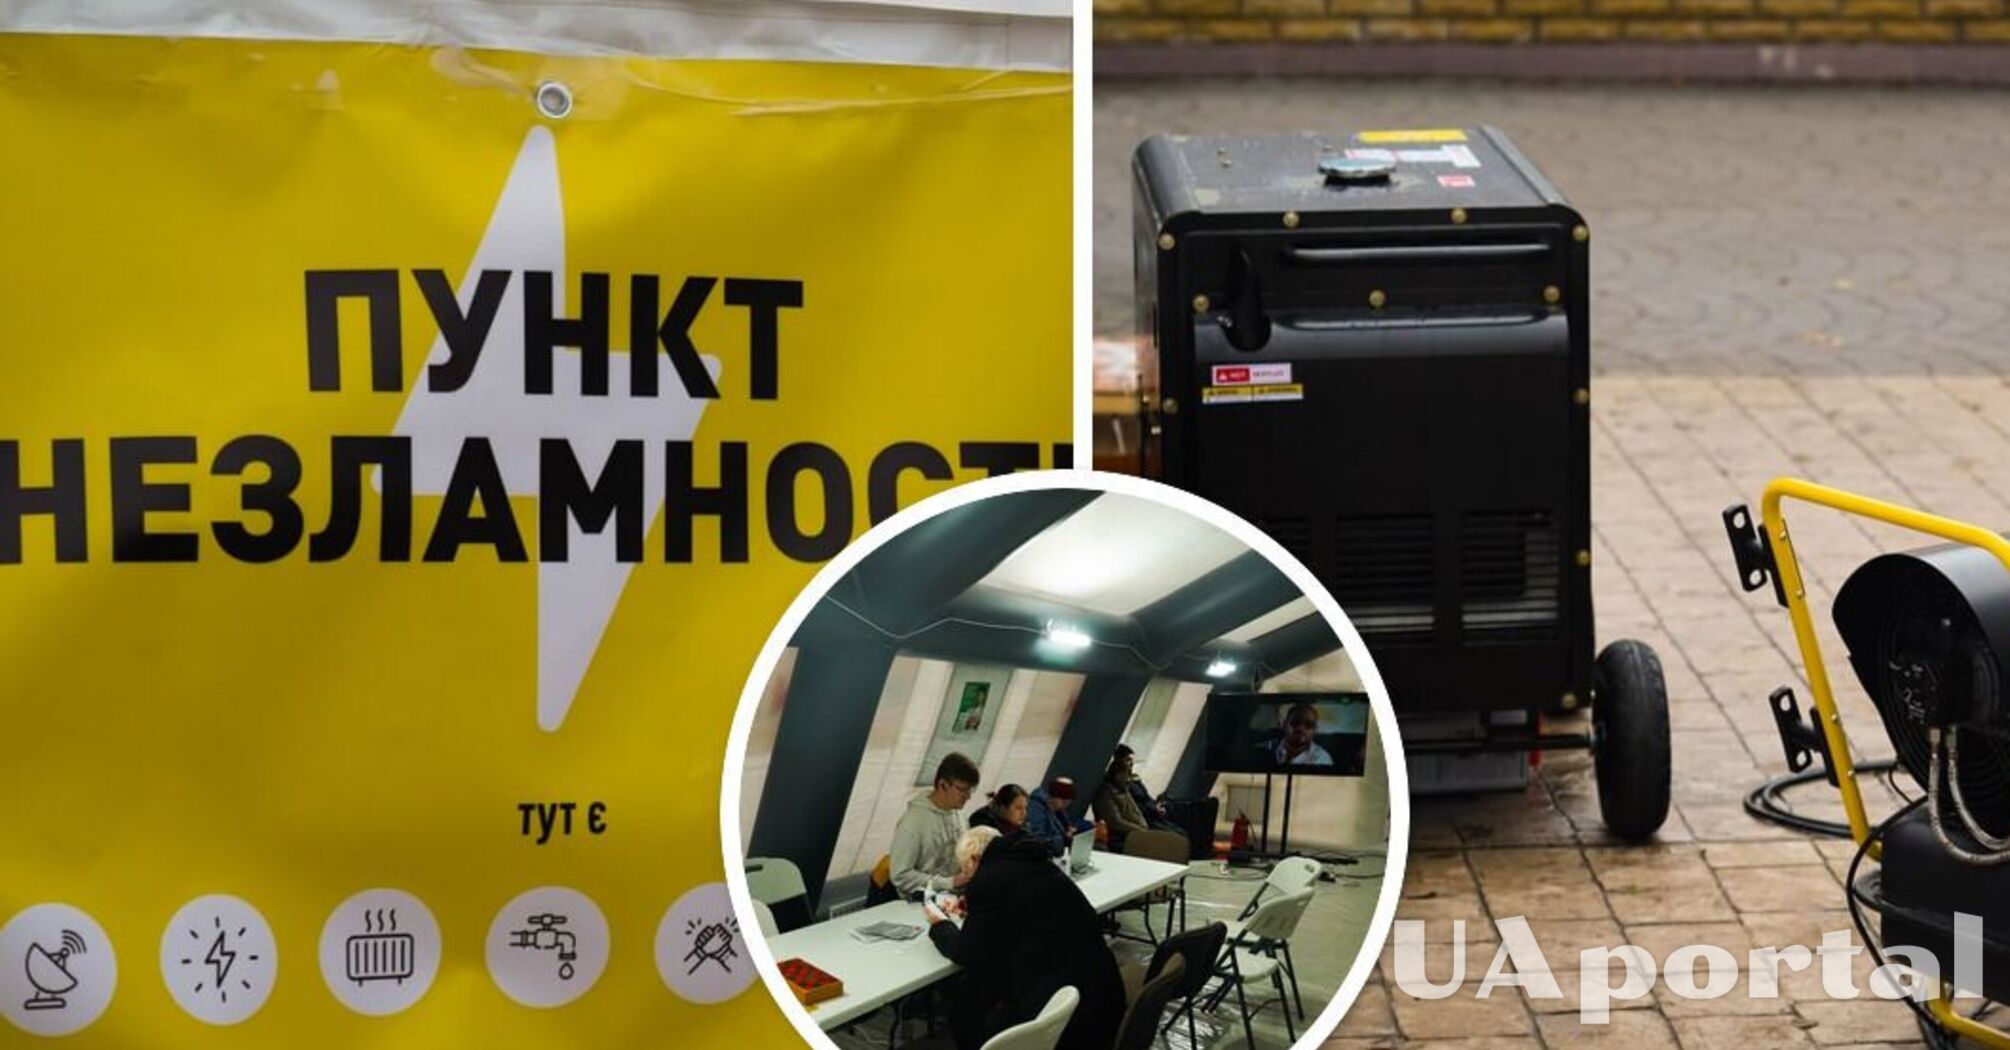 Обеспечат теплом, светом и интернетом: перечень Пунктов Несокрушимости в Киевской области